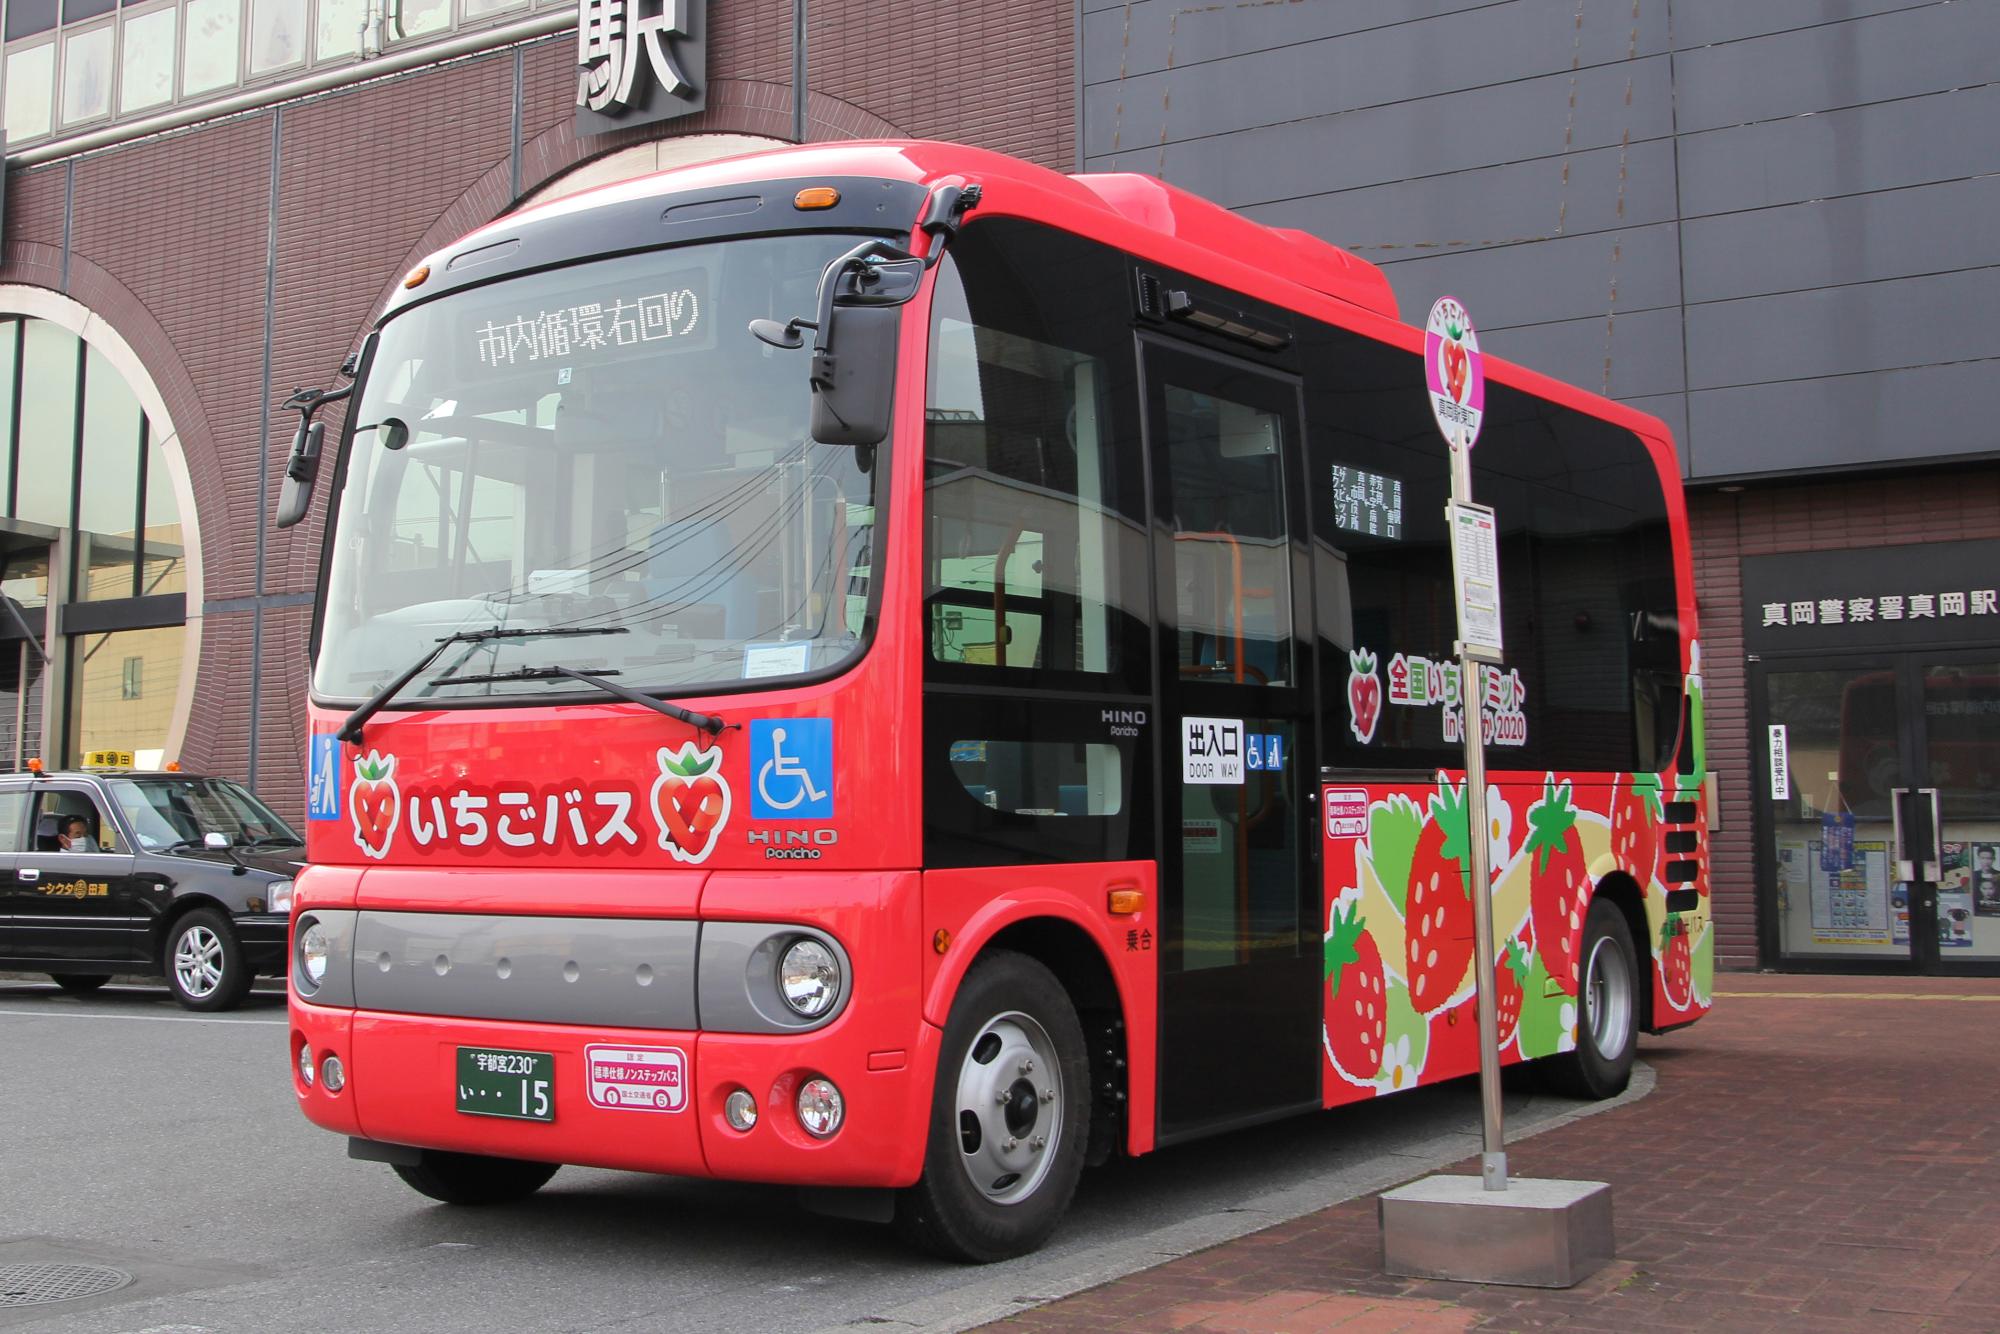 バス停前に停車している全体が赤く、車体に苺の絵が描かれているいちごバスの写真